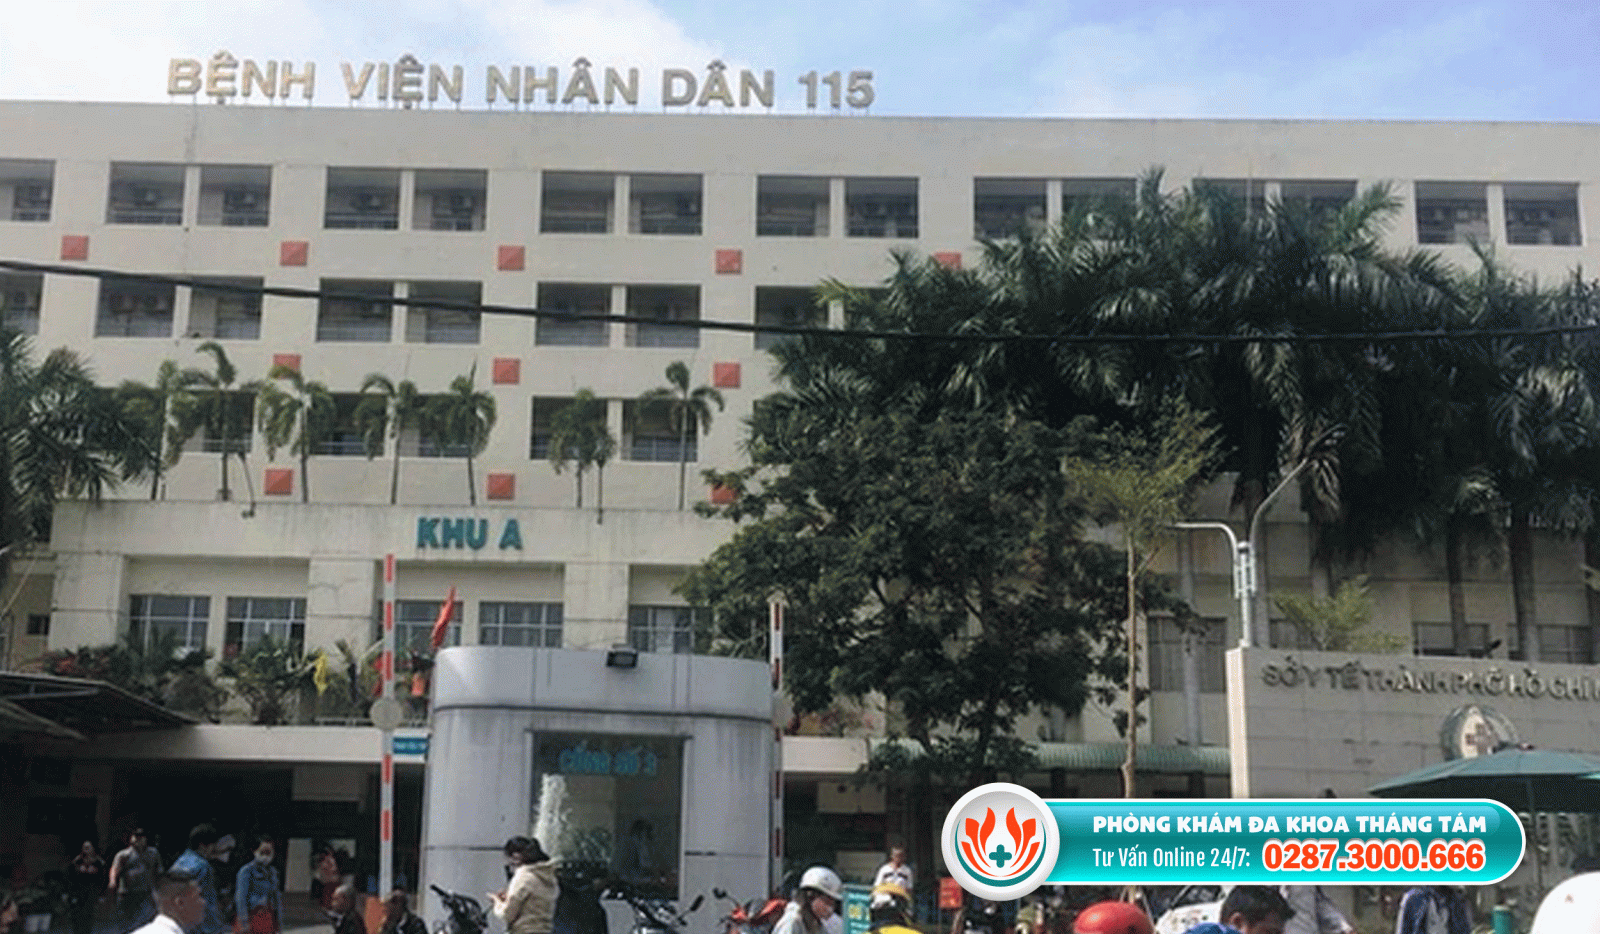 Bệnh viện khám nam khoa hcm - Bệnh viện Nhân dân 115